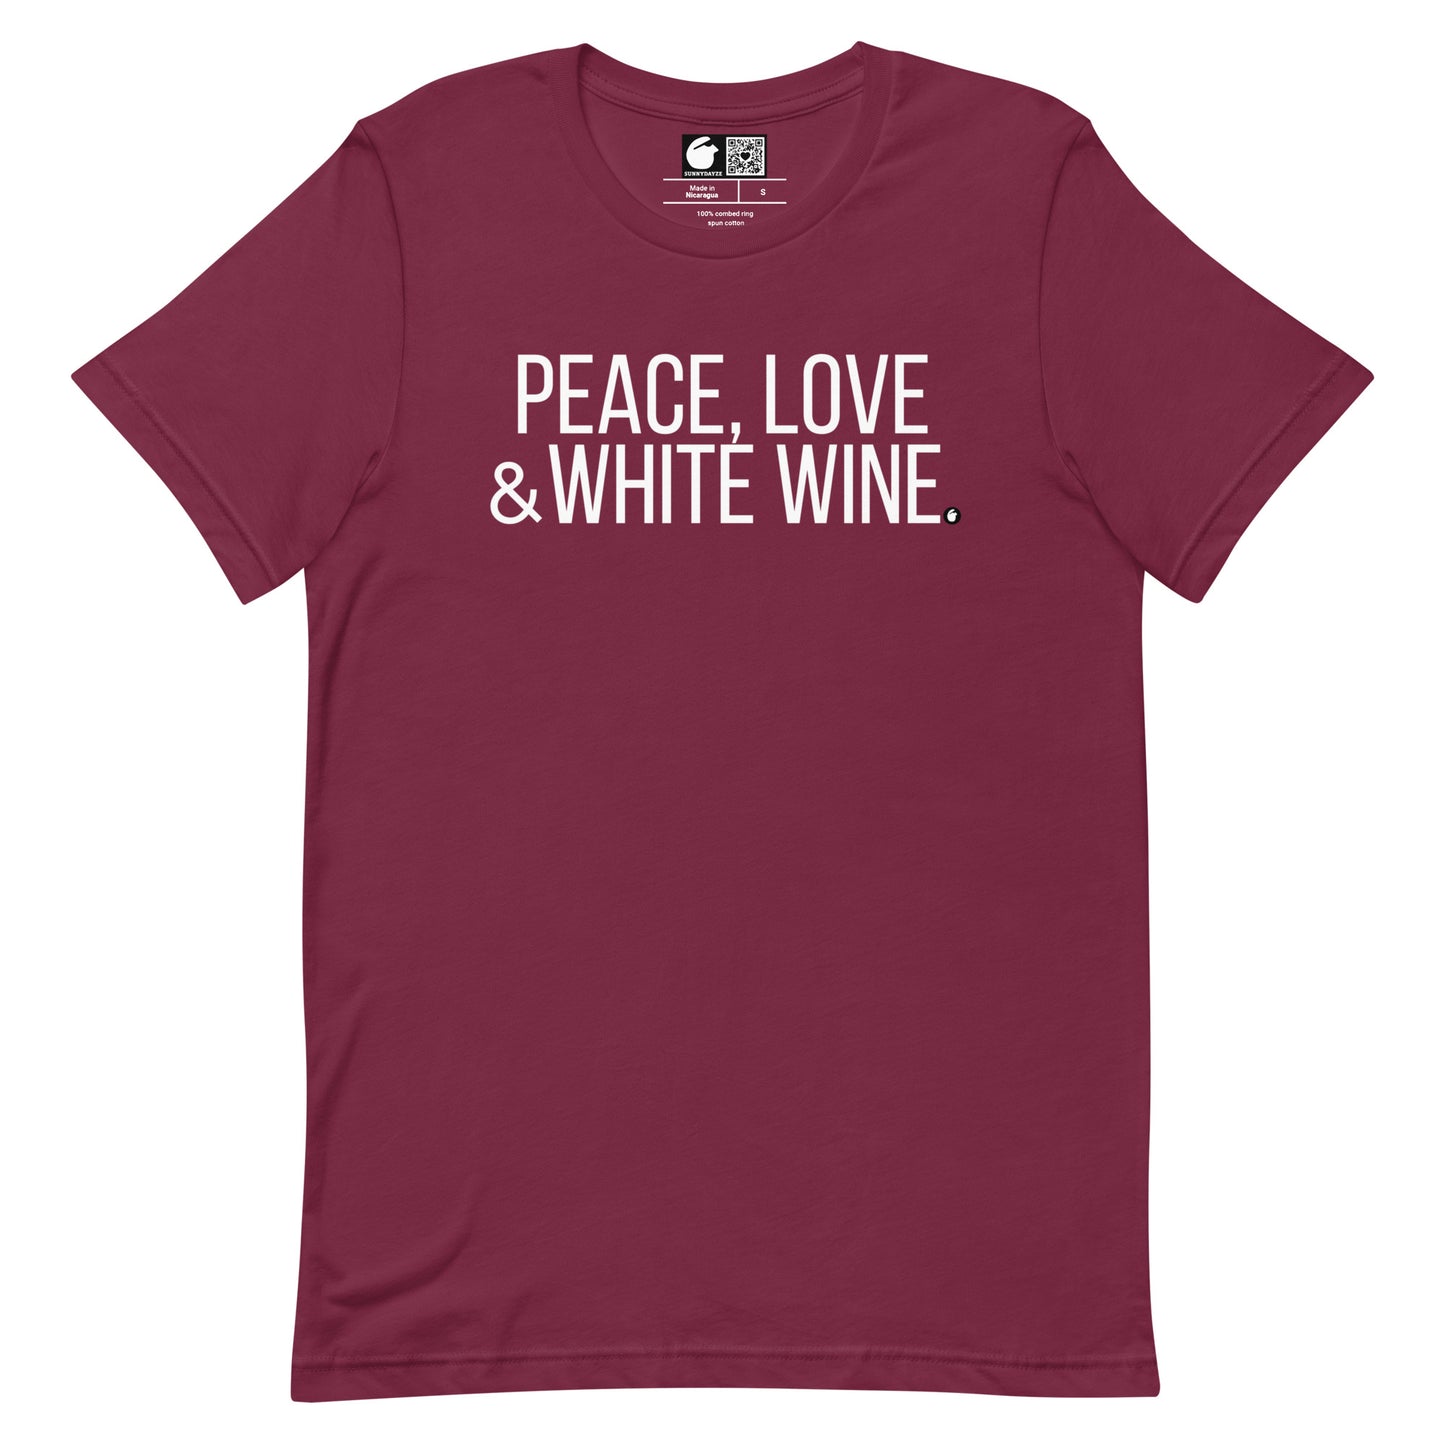 WHITE WINE Short-Sleeve Unisex t-shirt